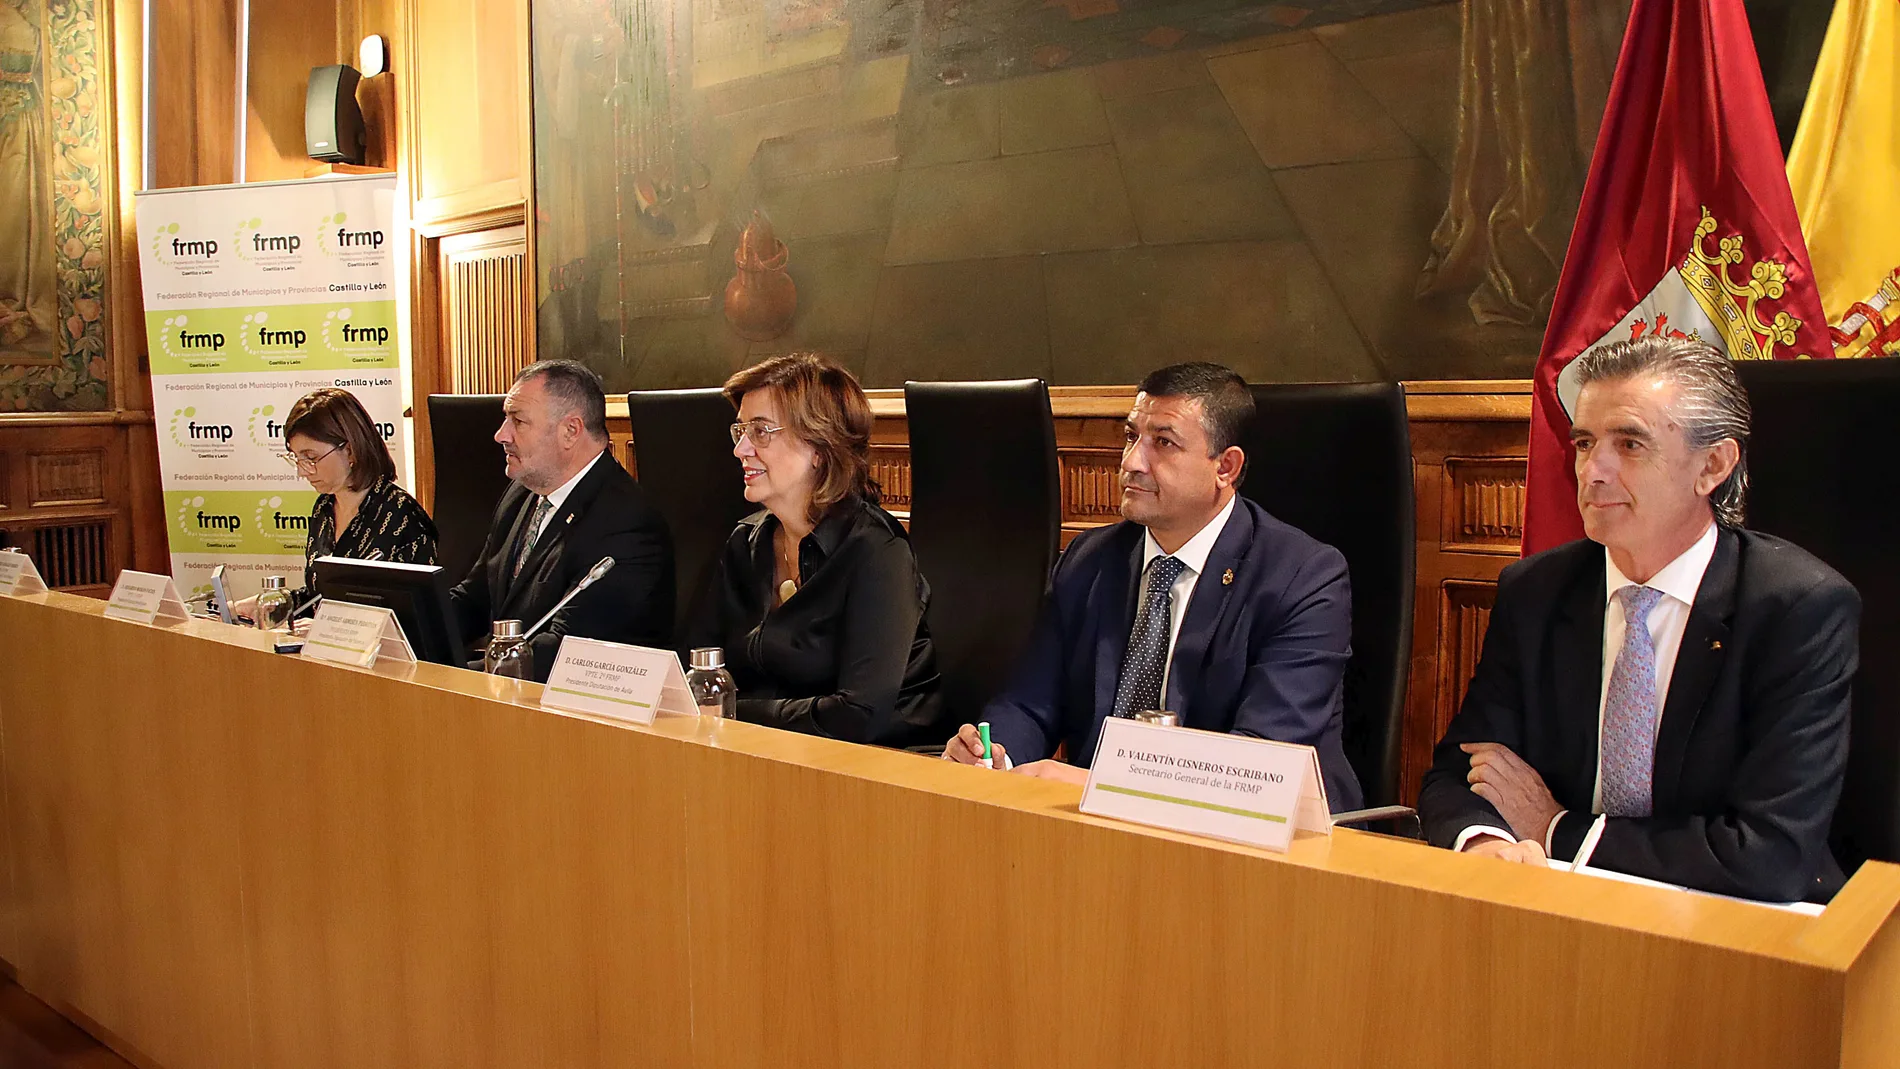 Ángeles Armisén preside la Comisión Ejecutiva de la FRMP celebrada en la Diputación de León